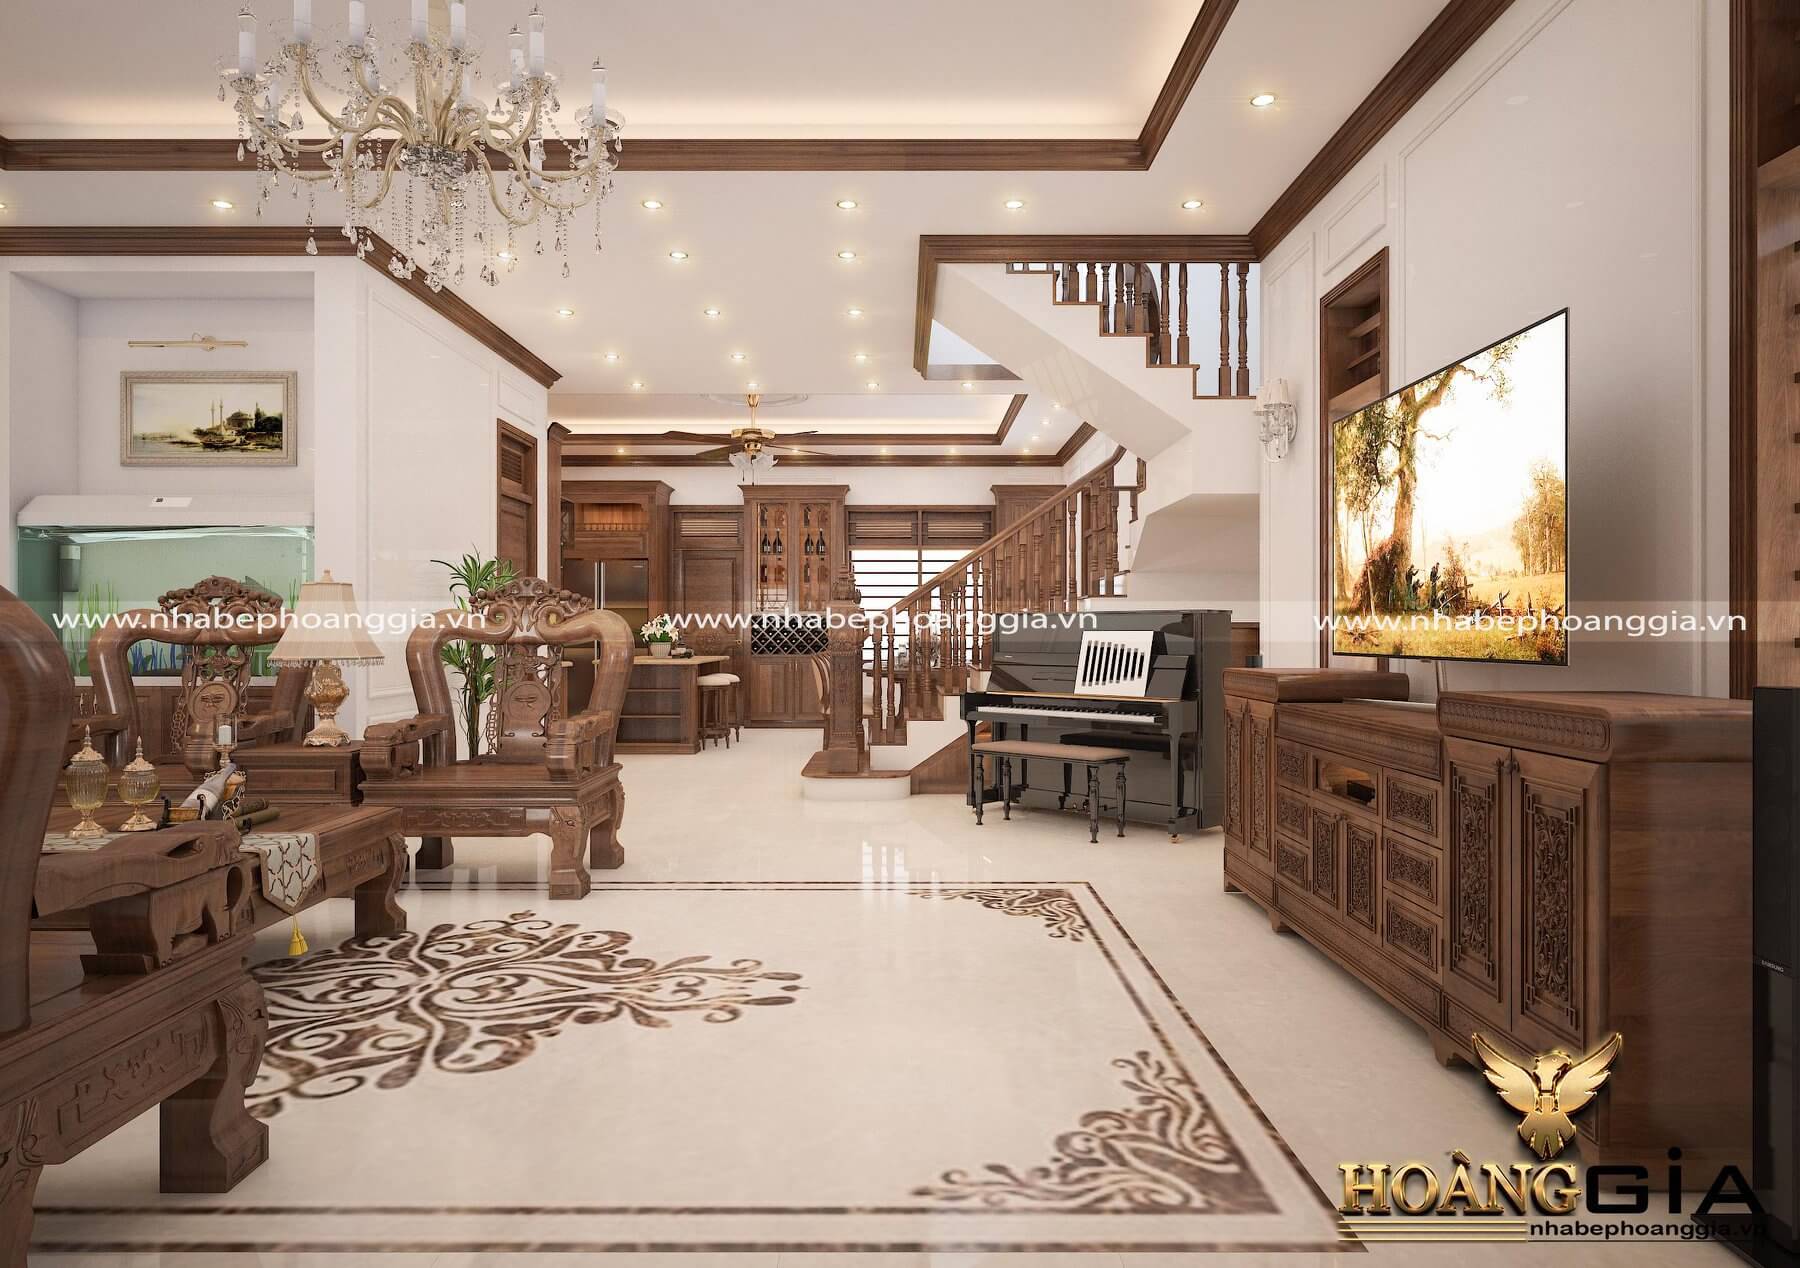 Dự án thi công và thiết kế nội thất nhà anh Tùng ở Thanh Hóa